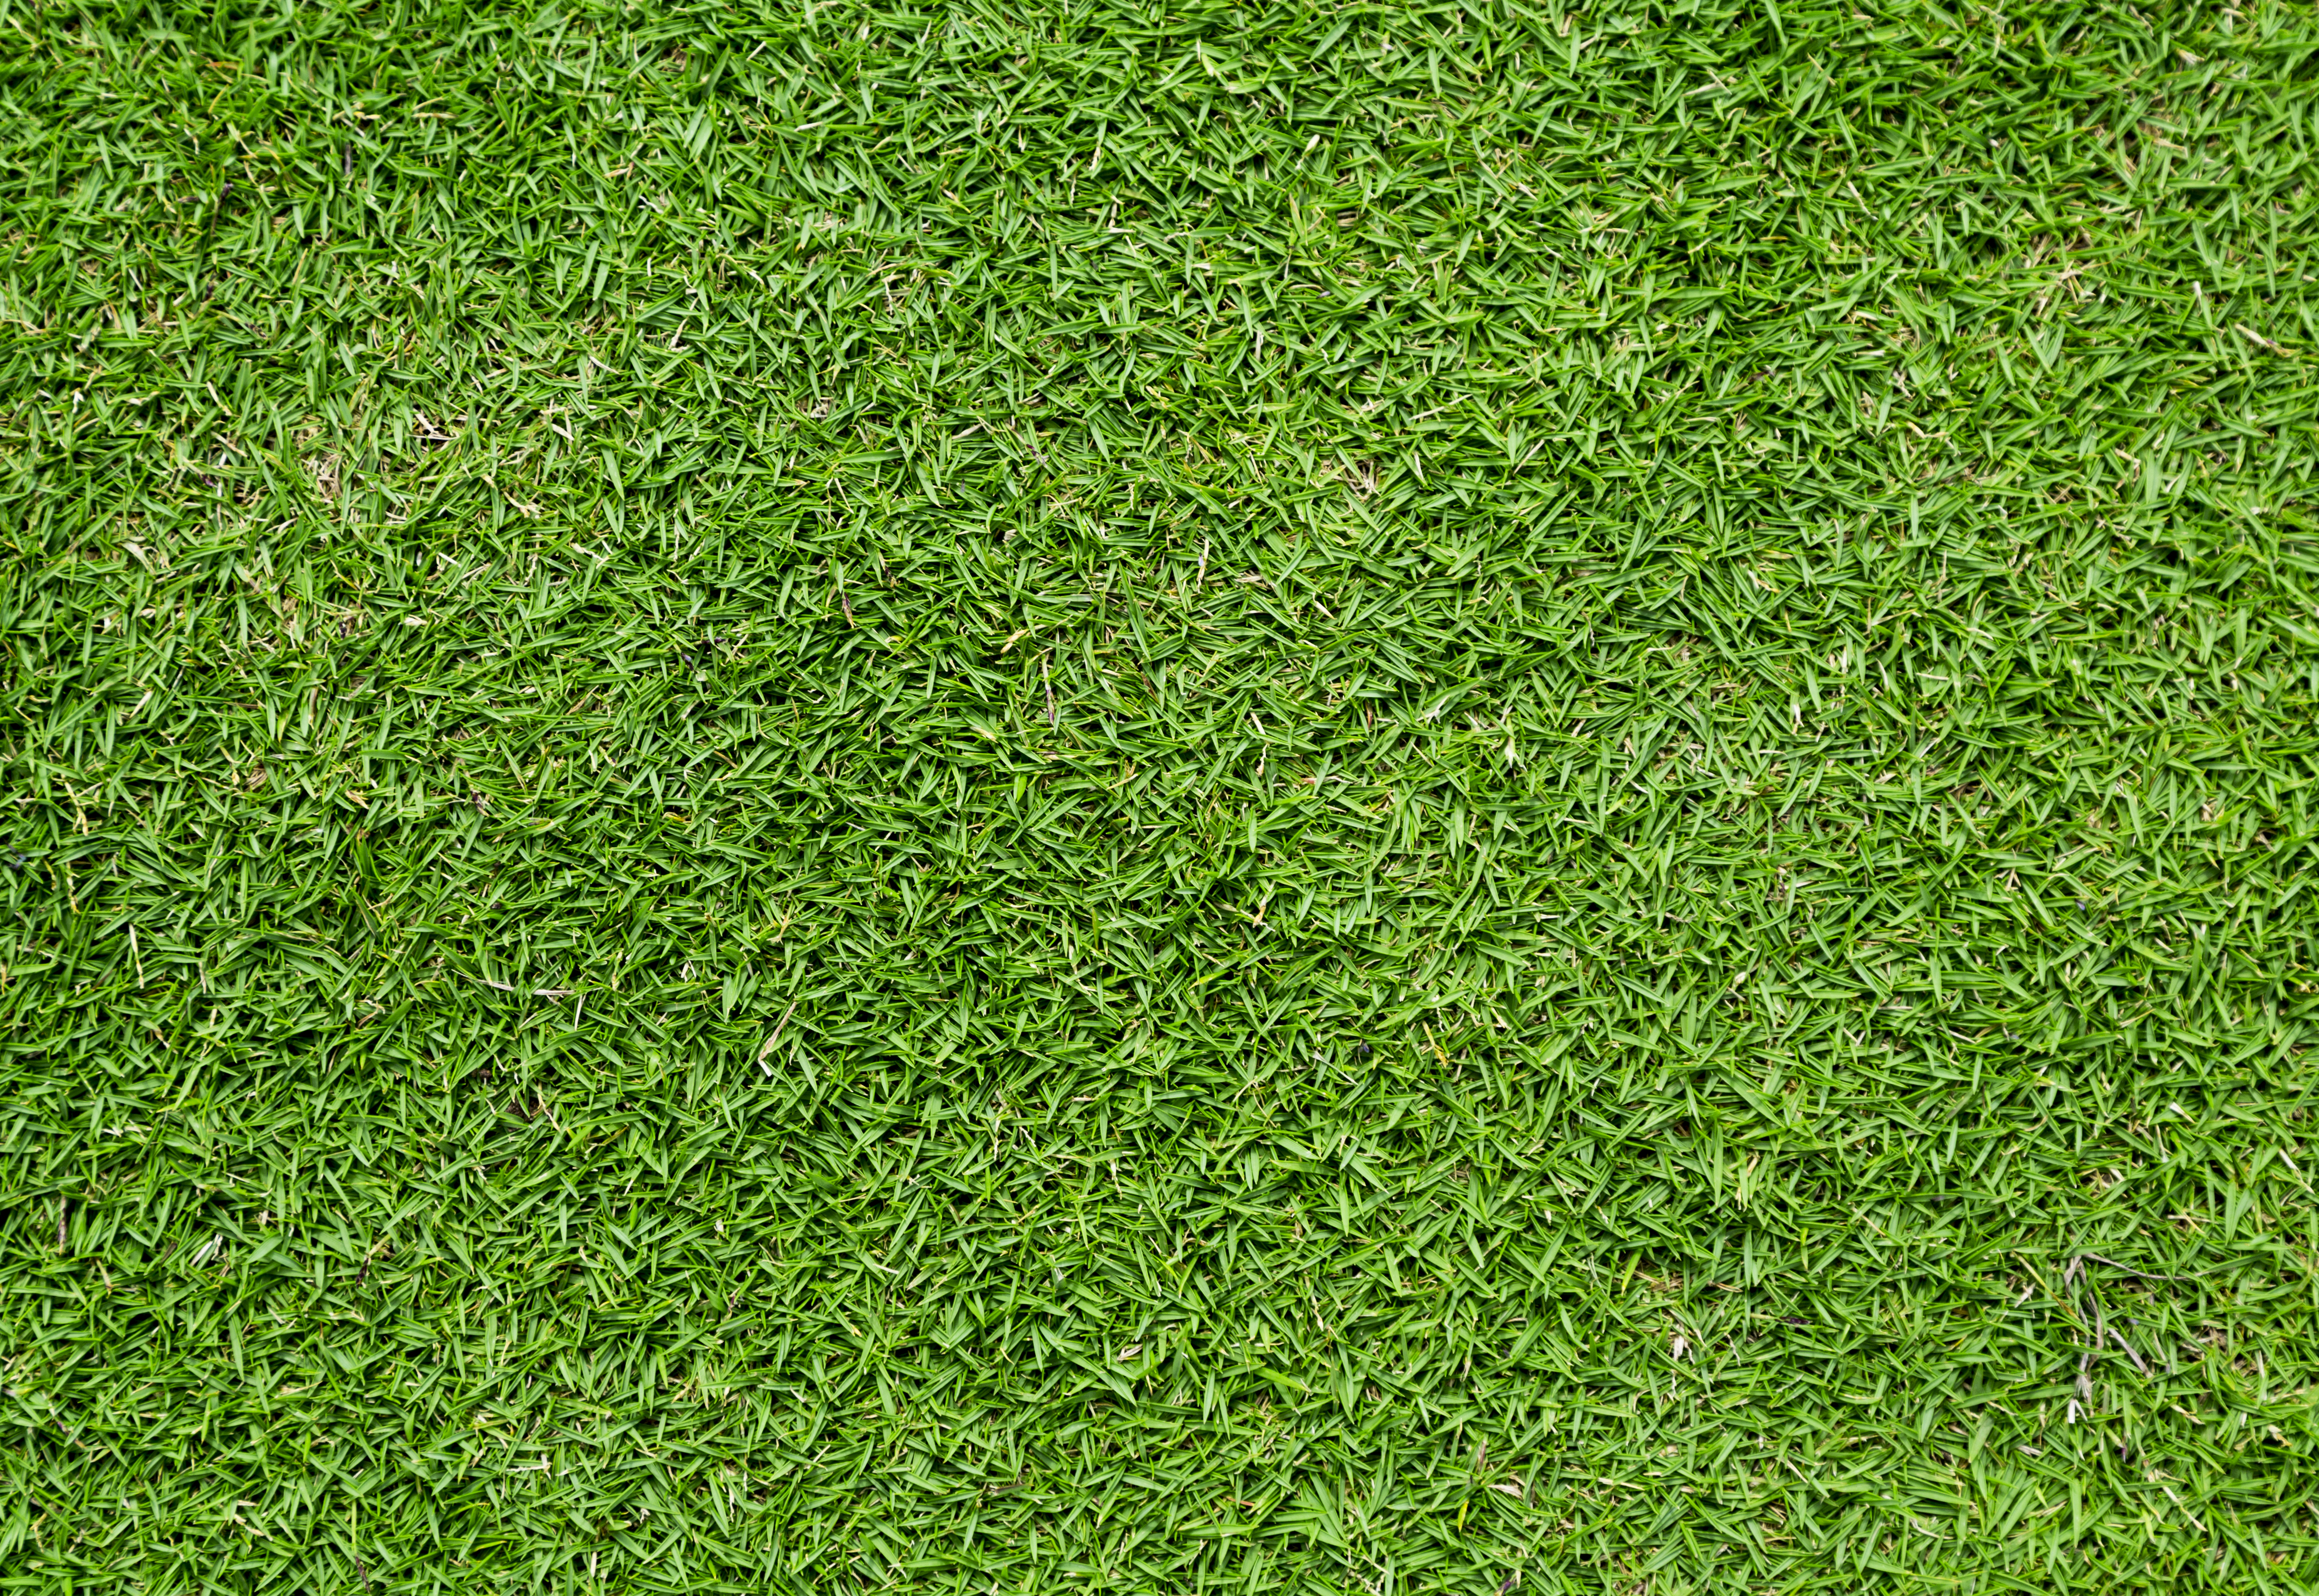 Grass #8